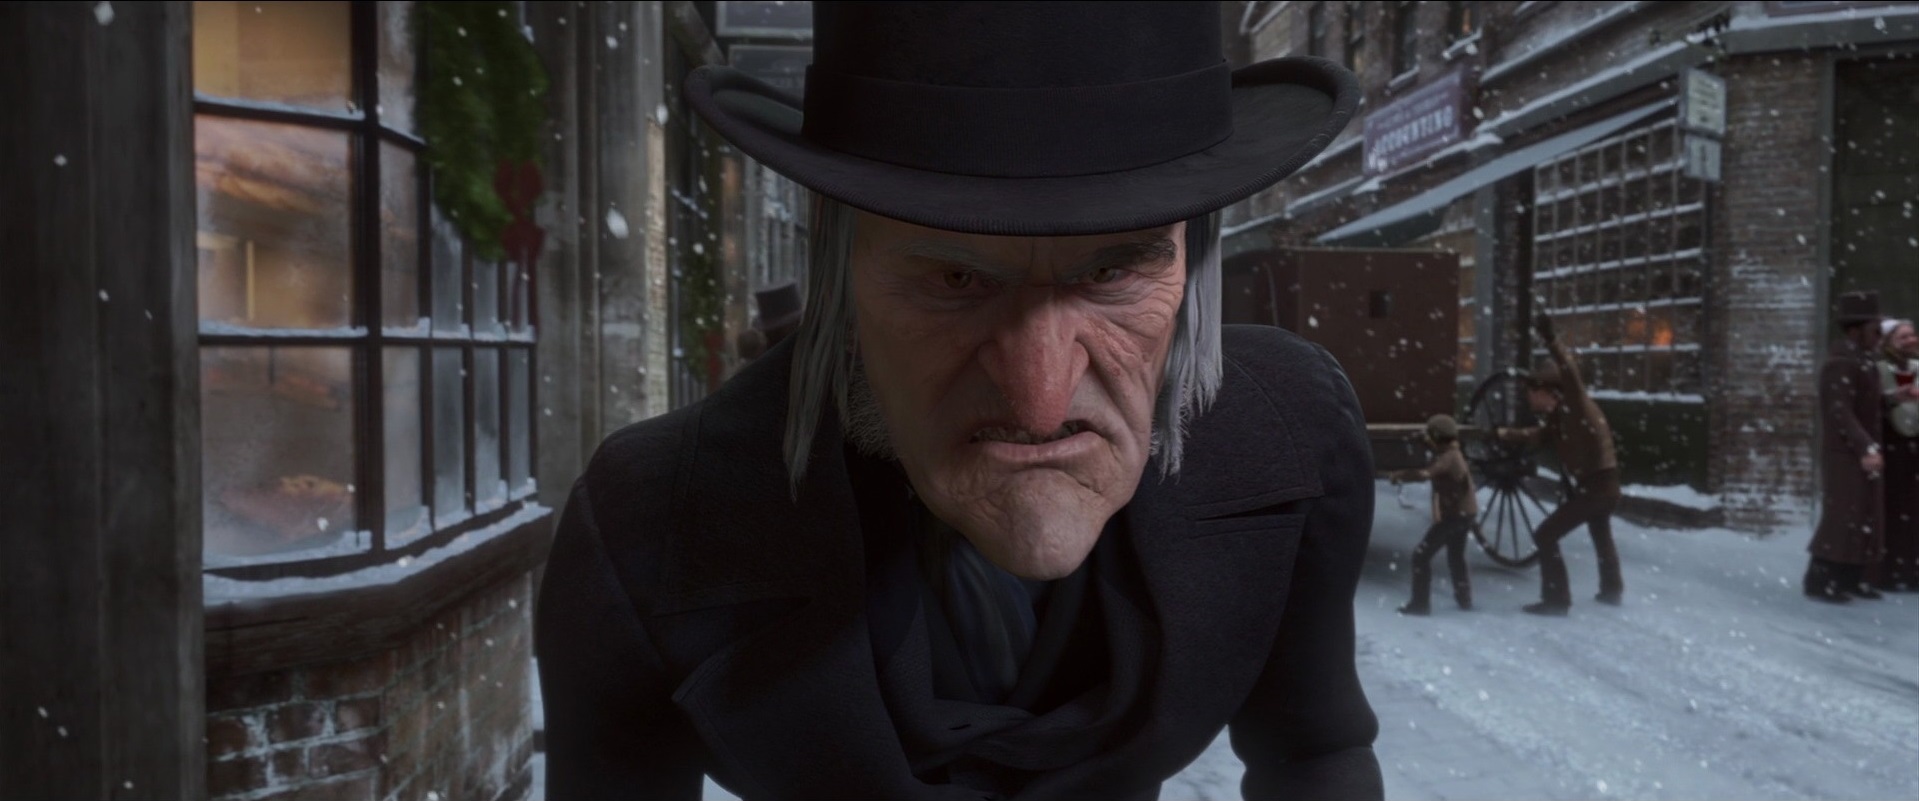 Scrooge, el avaro protagonista de Cuento de Navidad